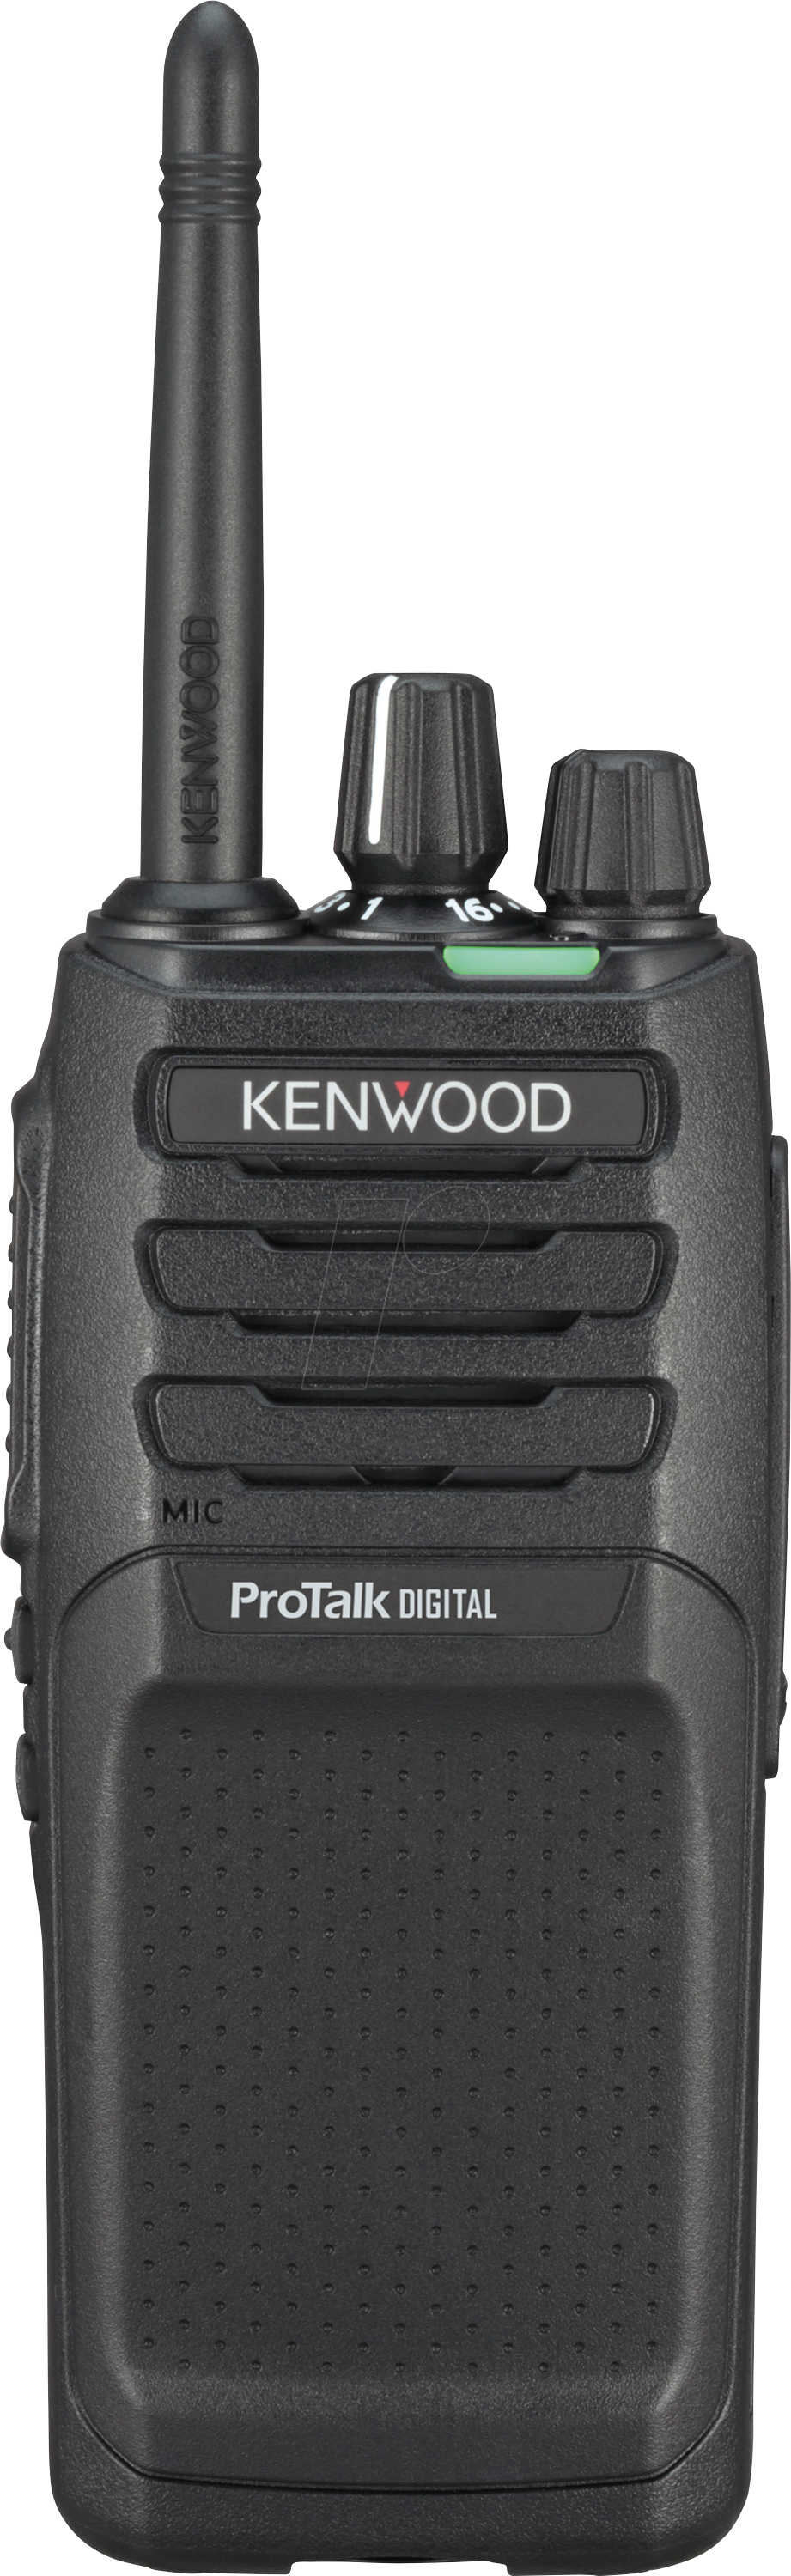 KW TK-3701DE - PMR446/dPMR446 Funkgerät, digital & analog von Kenwood